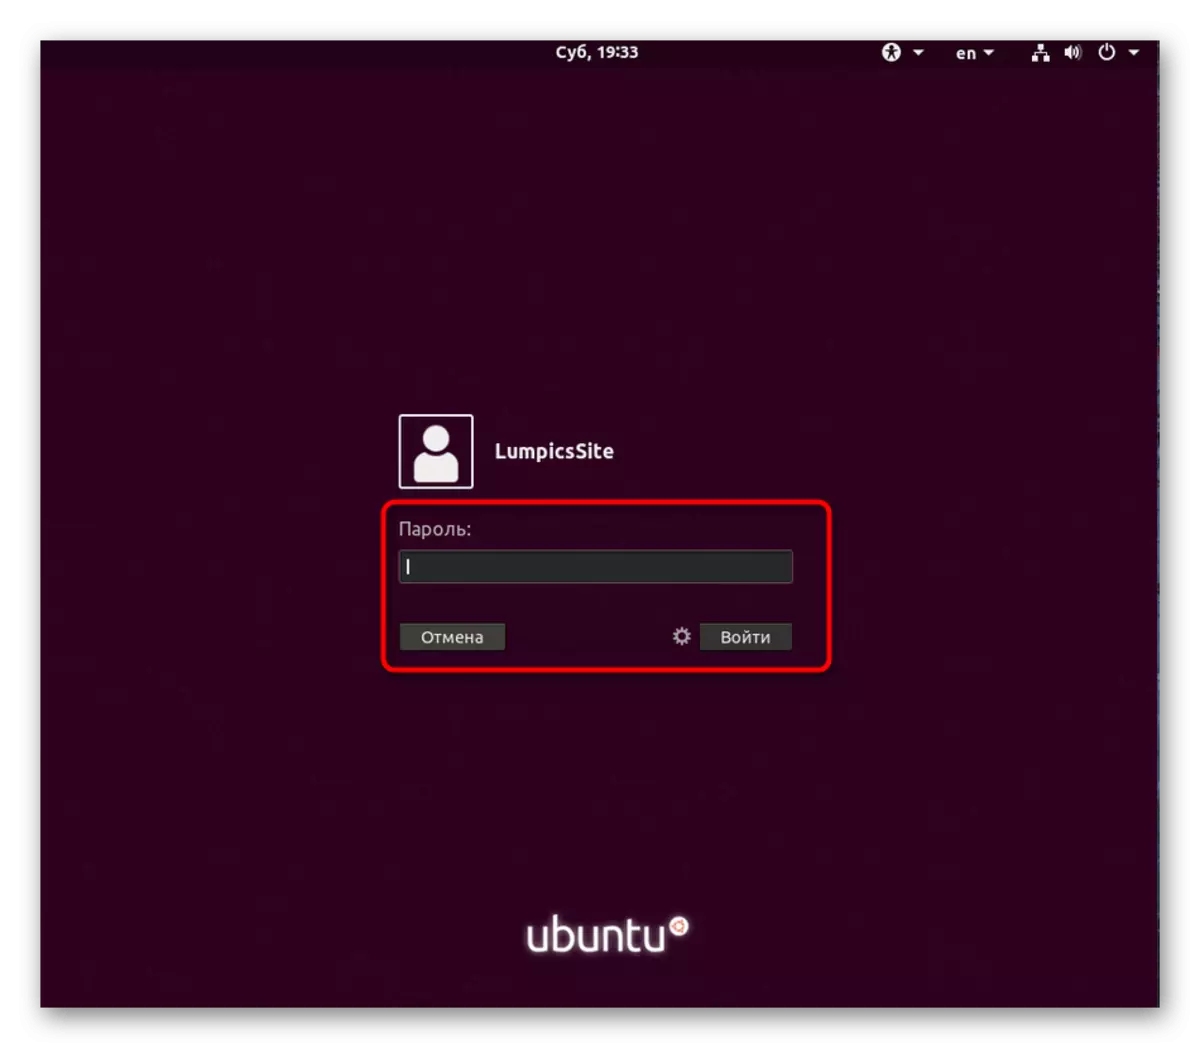 Geben Sie das Passwort ein, um den Benutzer in Ubuntu zu autorisieren